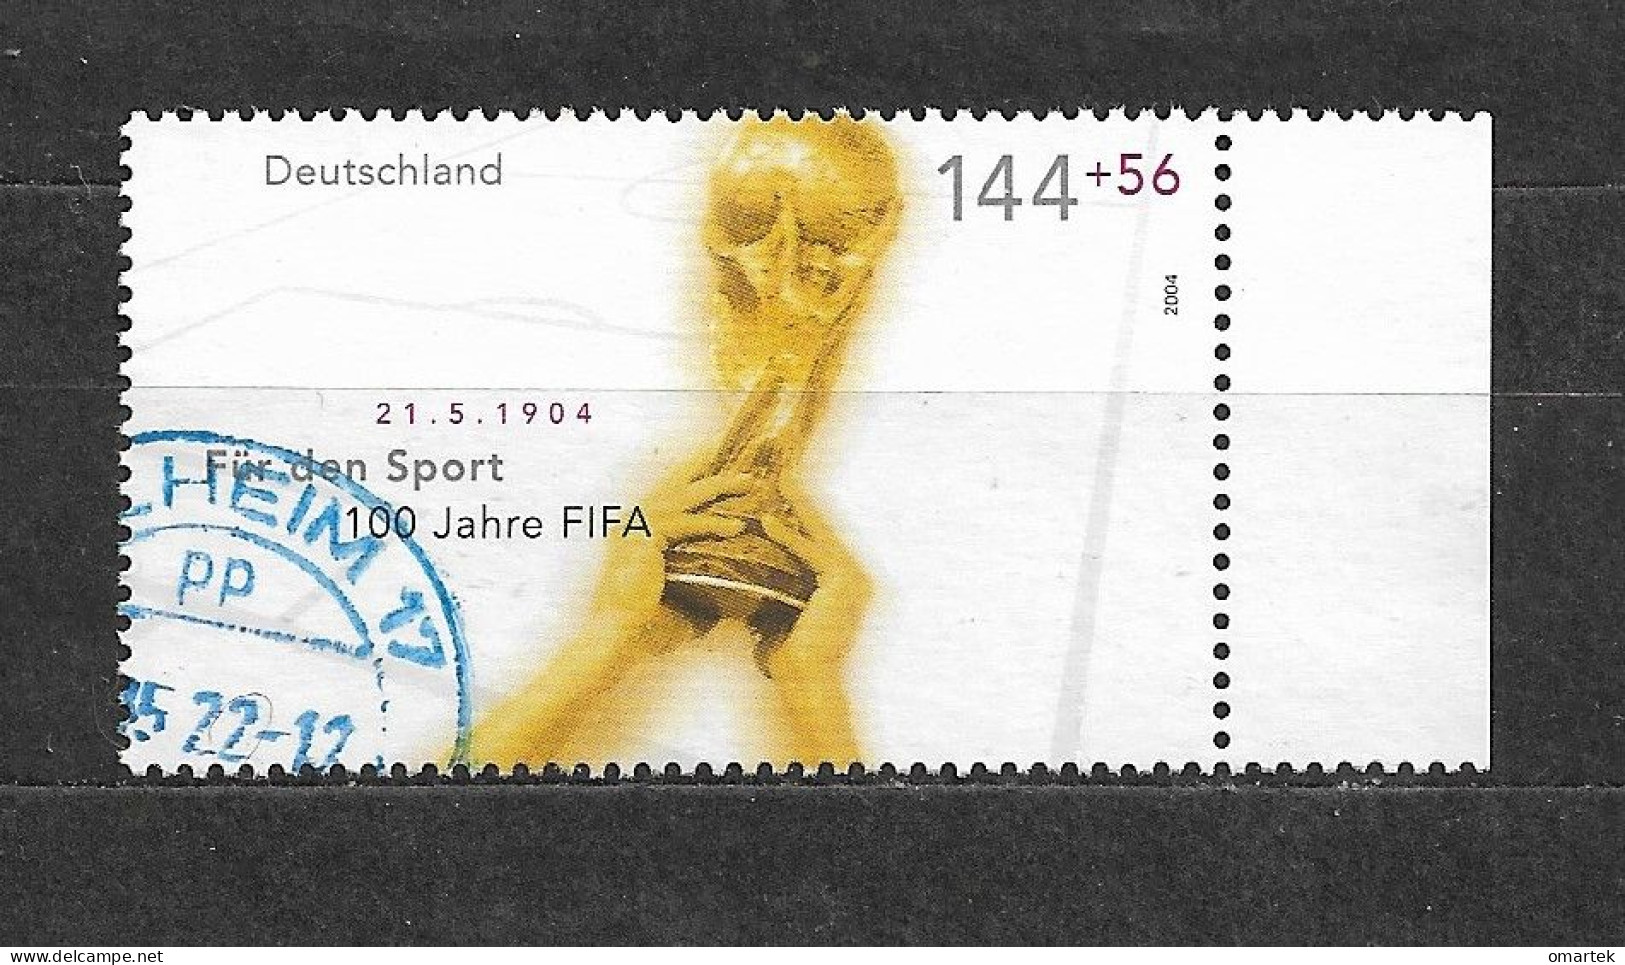 Deutschland Germany BRD 2004 ⊙ Mi 2328 FIFA World Cup Trophy. - Usati